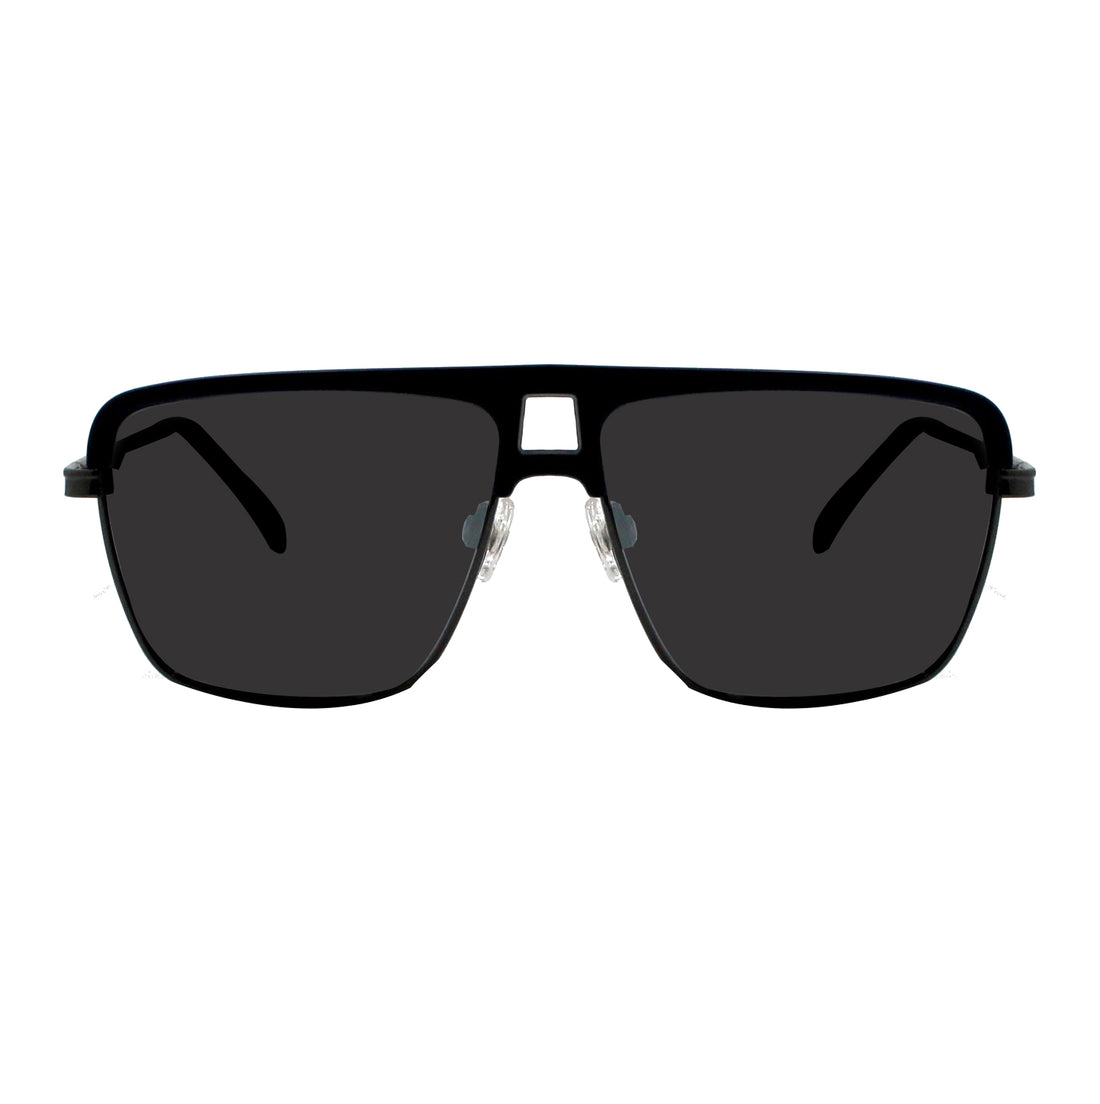 Shades X - Occhiali da sole polarizzati | Modello 3337